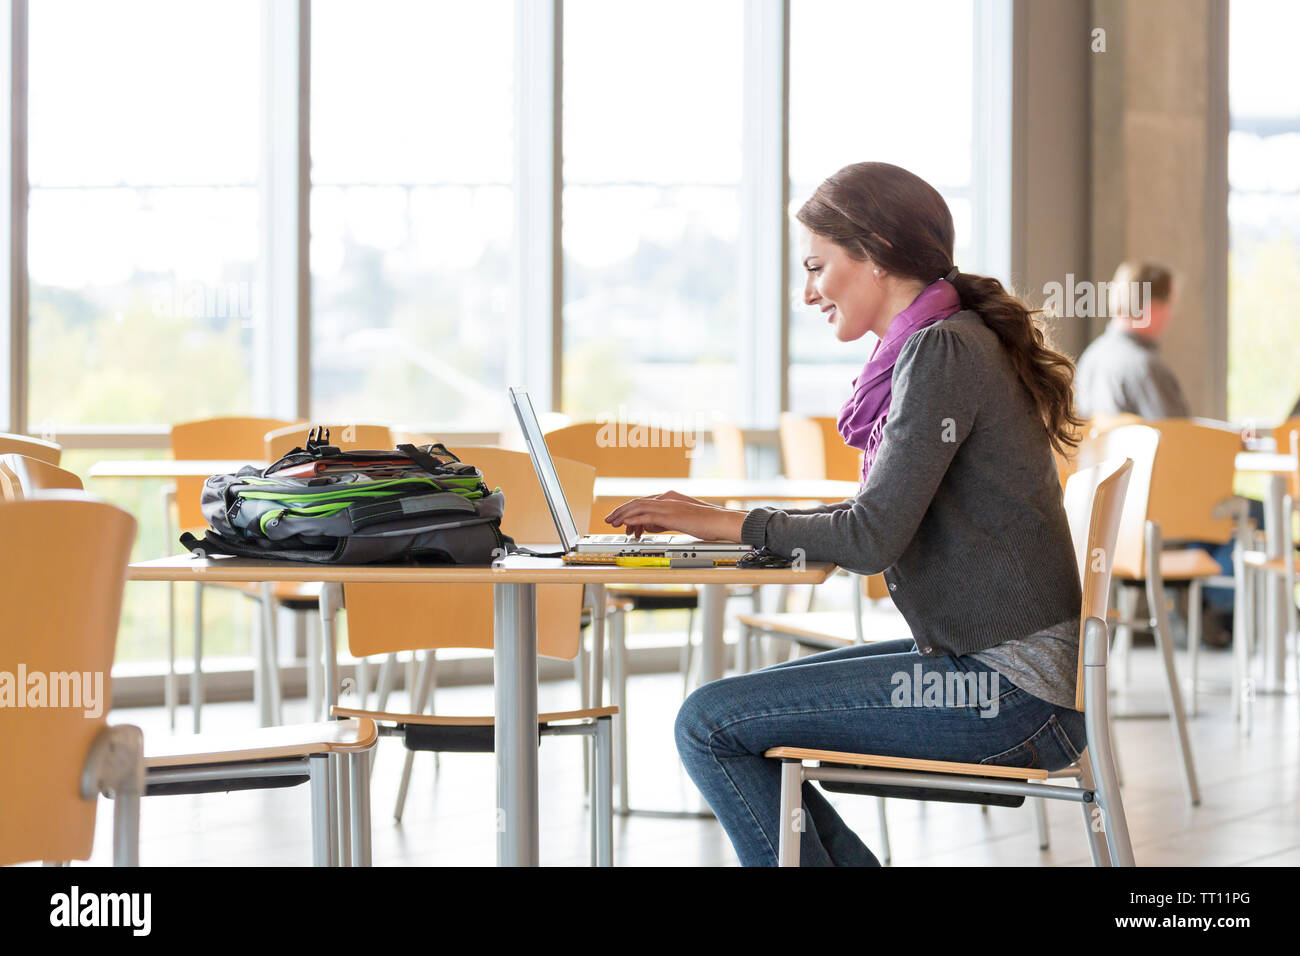 Heureux, jeune femme female college university student using laptop computer sur le campus Banque D'Images